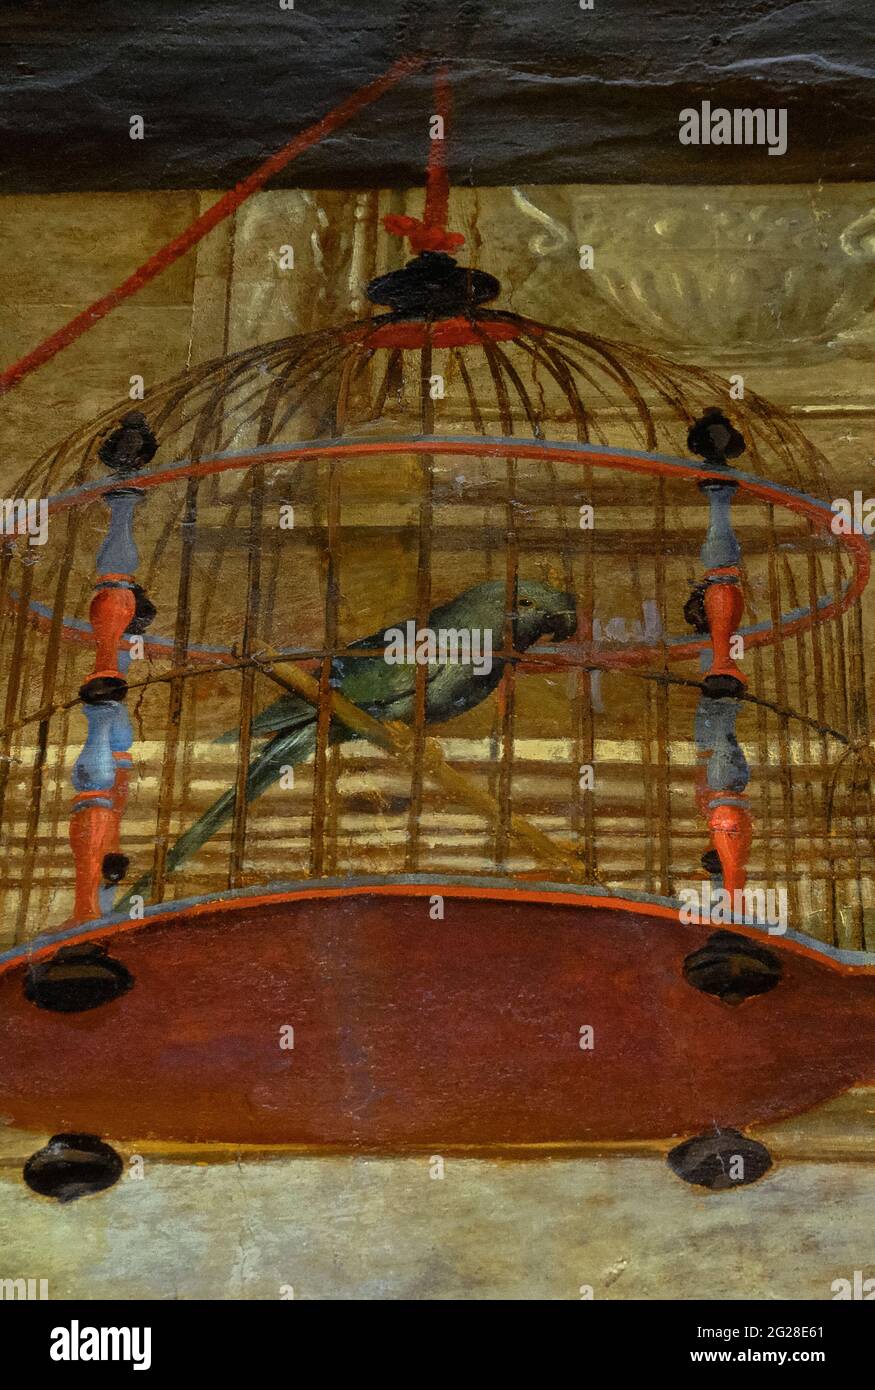 Un pappagallo verde in una gabbia rossa e blu apparentemente sospesa da una corda rossa da un balcone è tra le ingegnose opere d’arte illusoria nella decorazione trompe l’oeil della Hôtel de Châteaurenard ad Aix-en-Provence, Bouches-du-Rhône, Provence-Alpes-Côte d’Azur, Francia. L'interno del palazzo in 1613 Gaston de Saporta è stato decorato dall'artista di corte Jean Daret (1668-1654), nato a Bruxelles, nel ‘S, sei anni prima che la casa diventasse la casa temporanea del re Luigi XIV Foto Stock